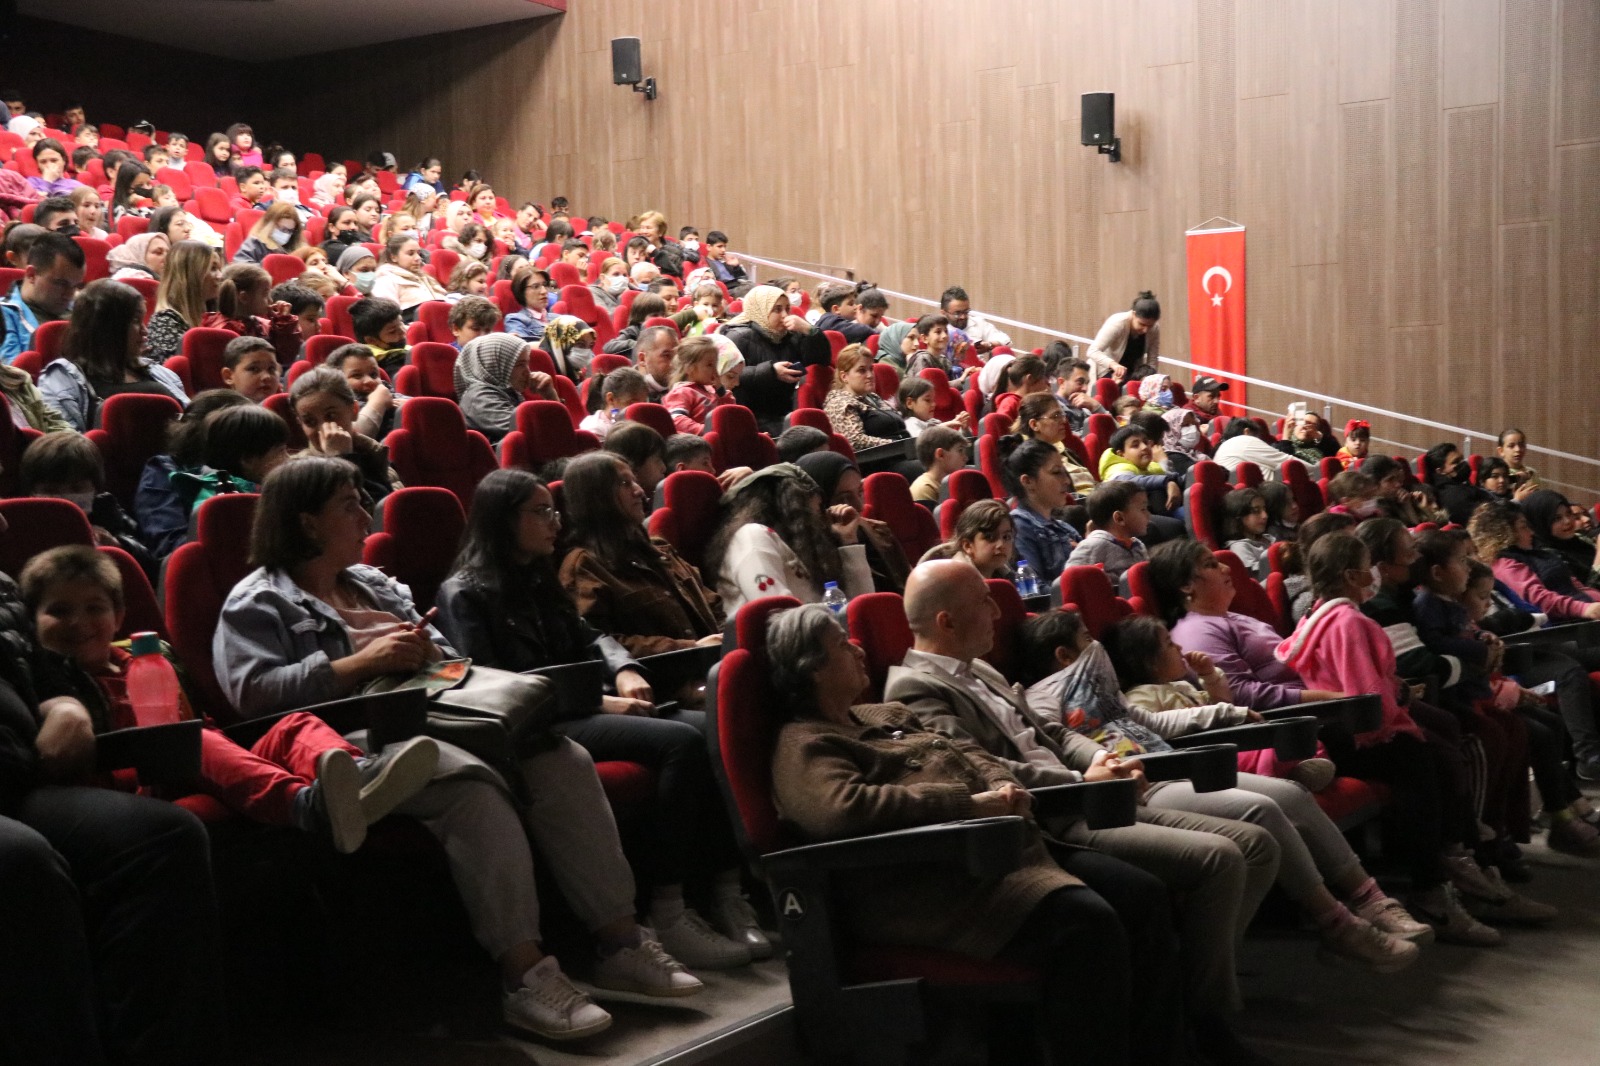 Sarayköy Belediyesi Tiyatro Kulübü tarafından sahnelenen "Karagöz ile Hacivat" gölge oyunu izleyenlere keyifli anlar yaşattı. 